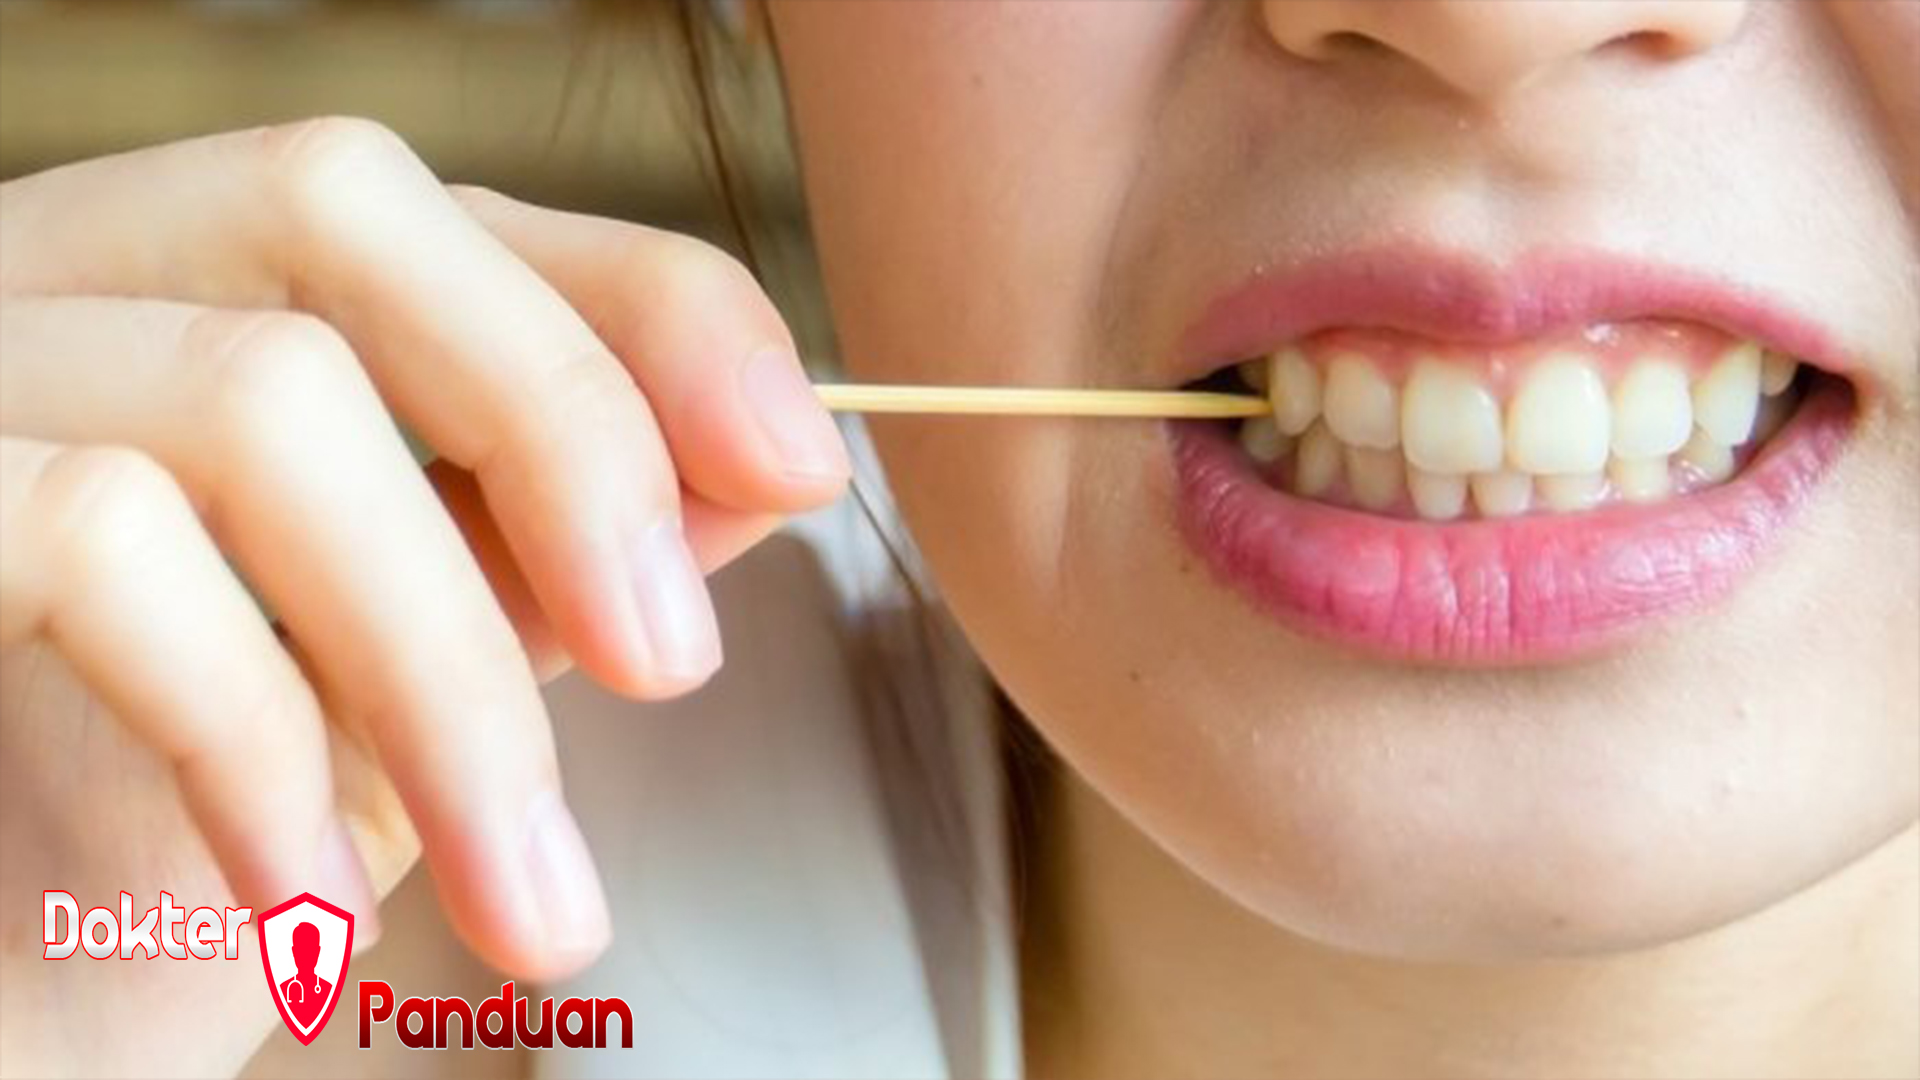 Fakta tentang Tusuk Gigi dan Cara Benar Membersihkan Gigi